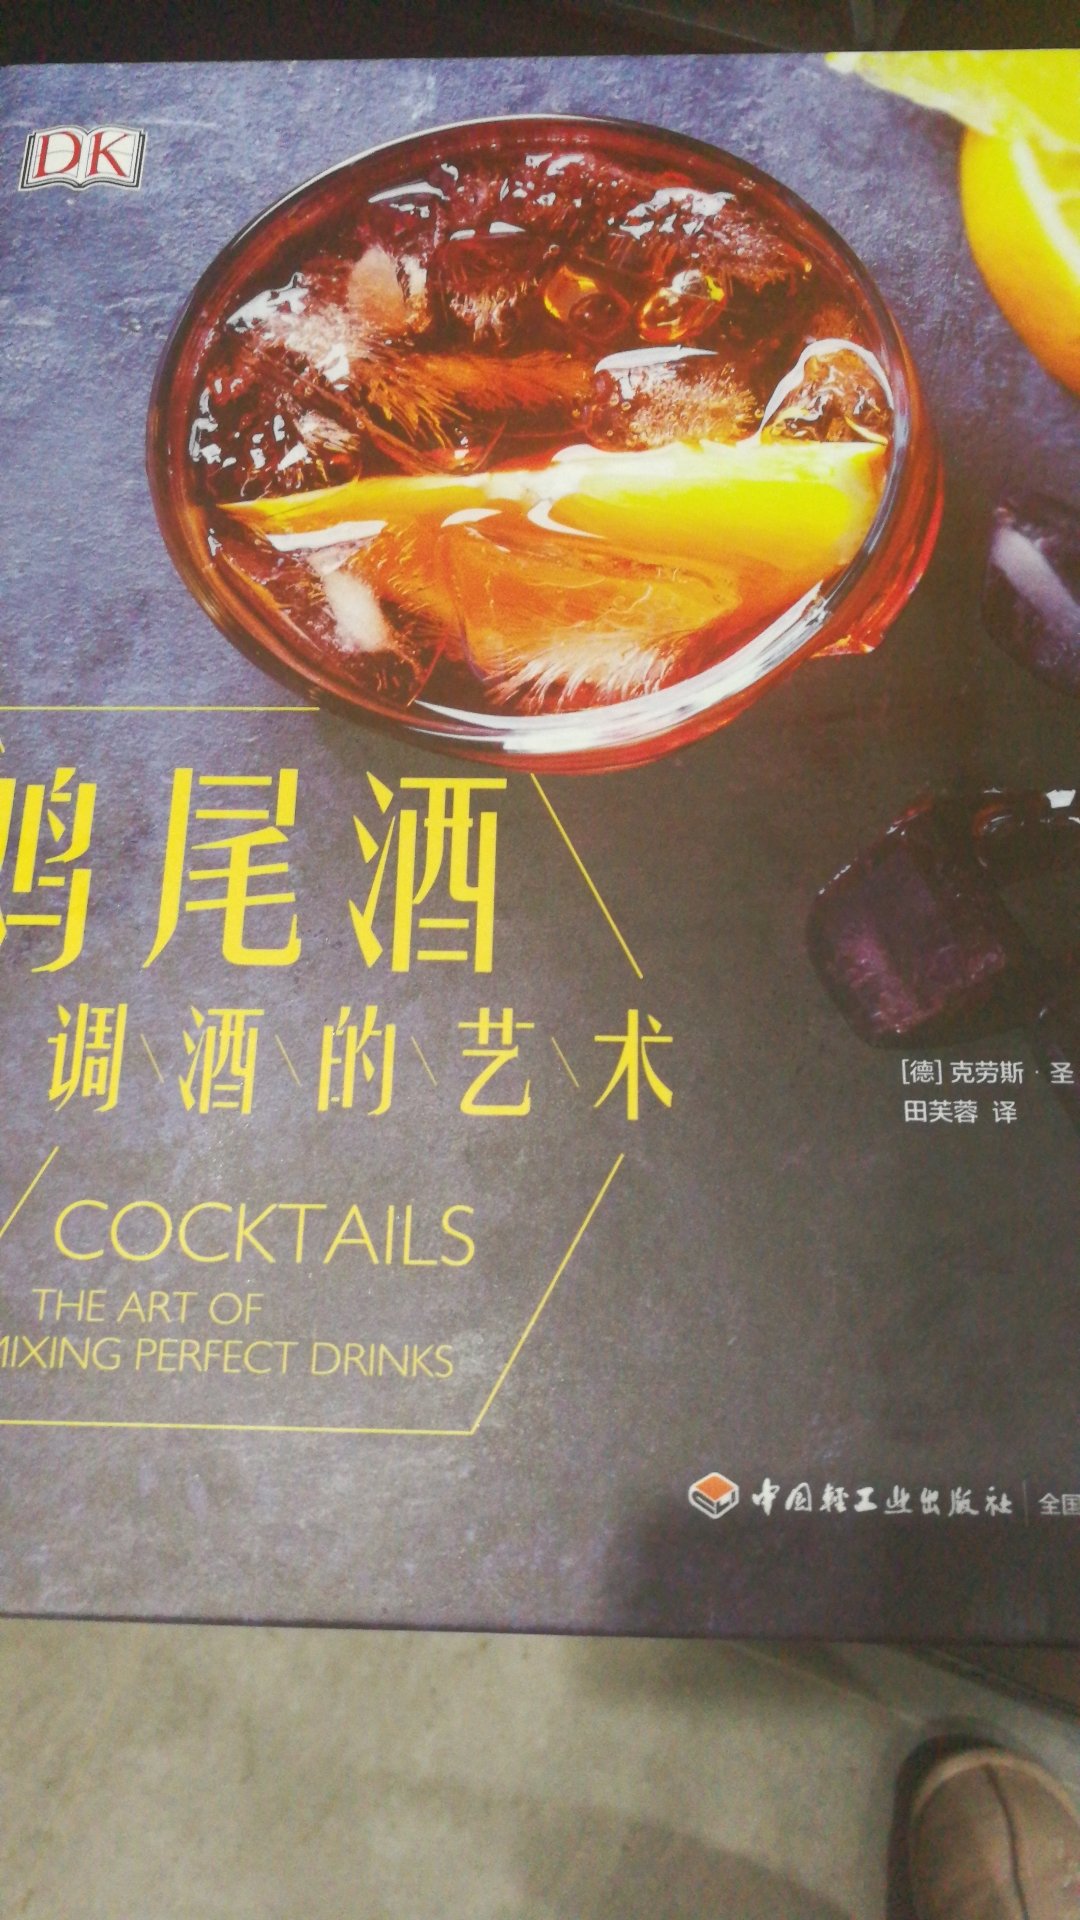 这本书是日式调酒，不是我想要的书，但是多学习也是好的。